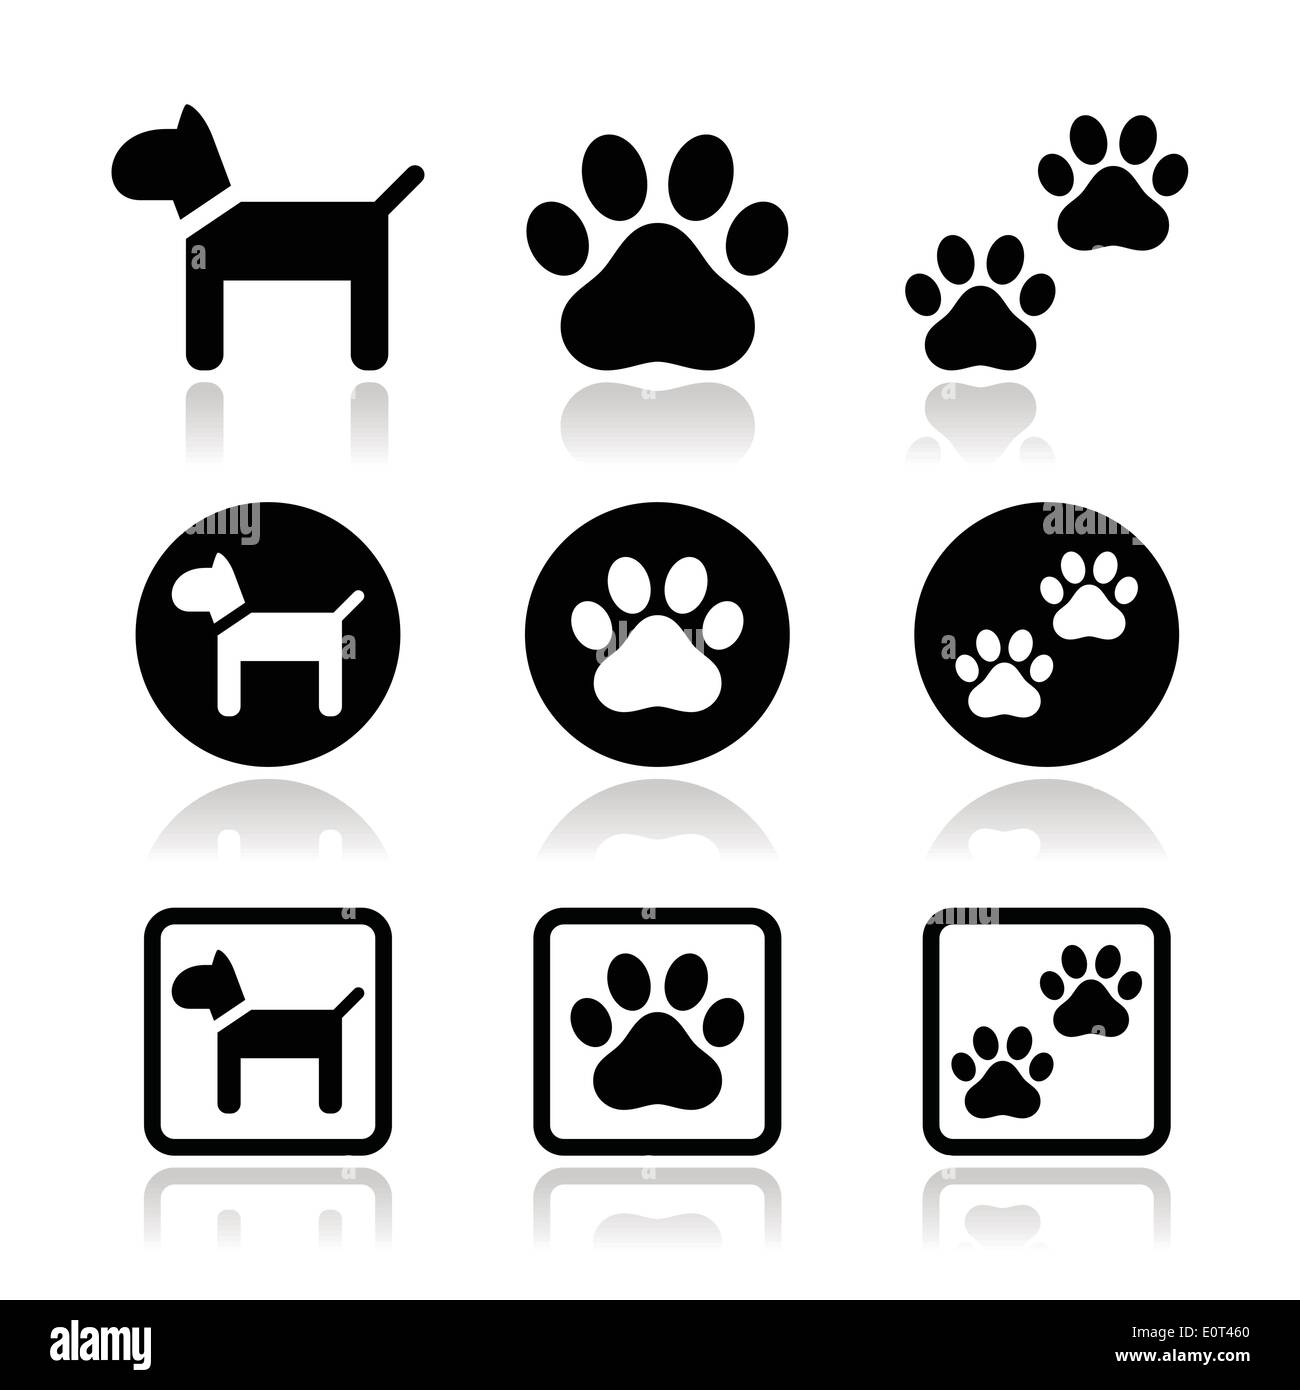 Empreintes de pattes de chien, vector icons set Illustration de Vecteur